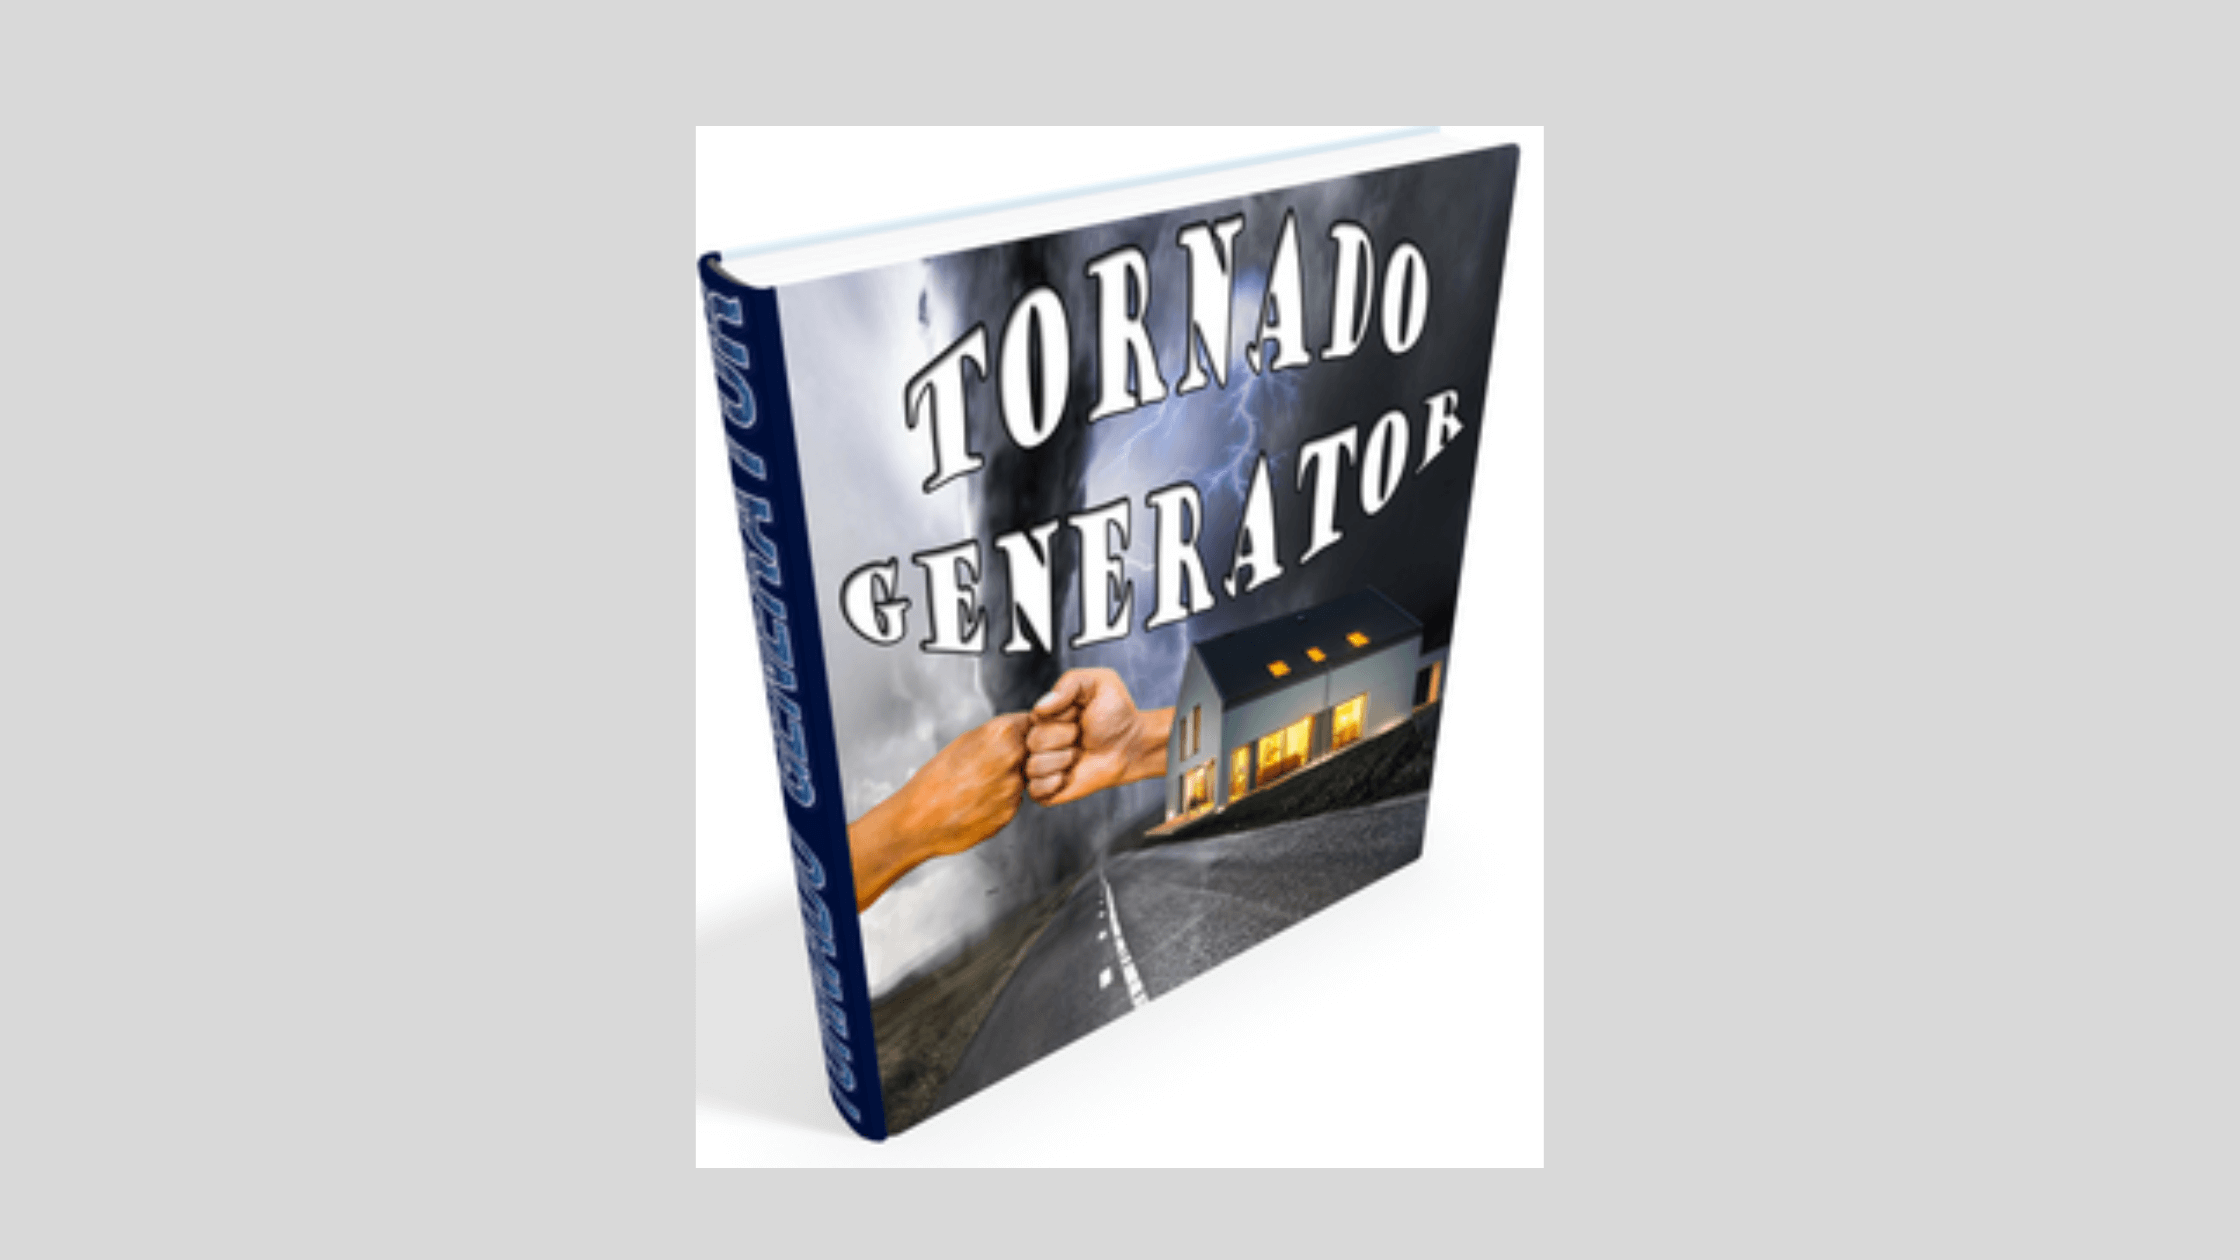 Tornado Generator System Reviews